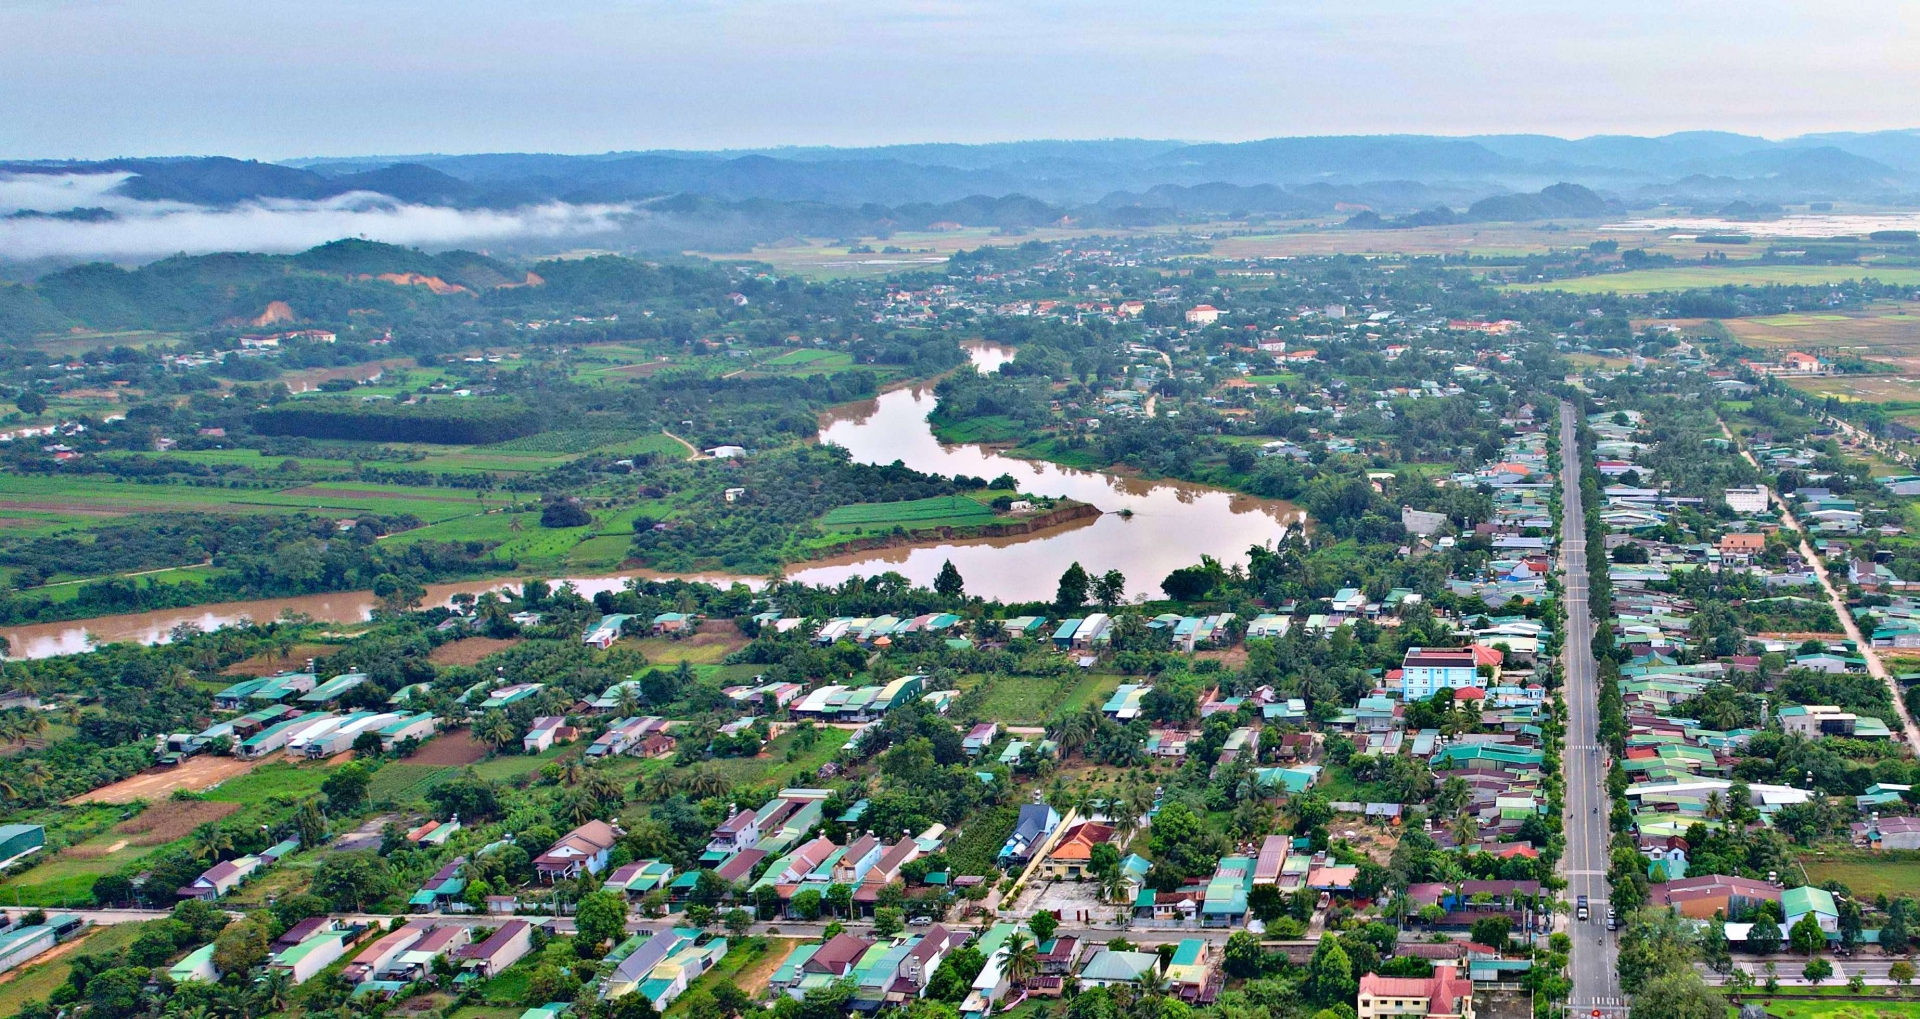 Hệ thống sông Đồng Nai chảy qua địa phận tỉnh Lâm Đồng